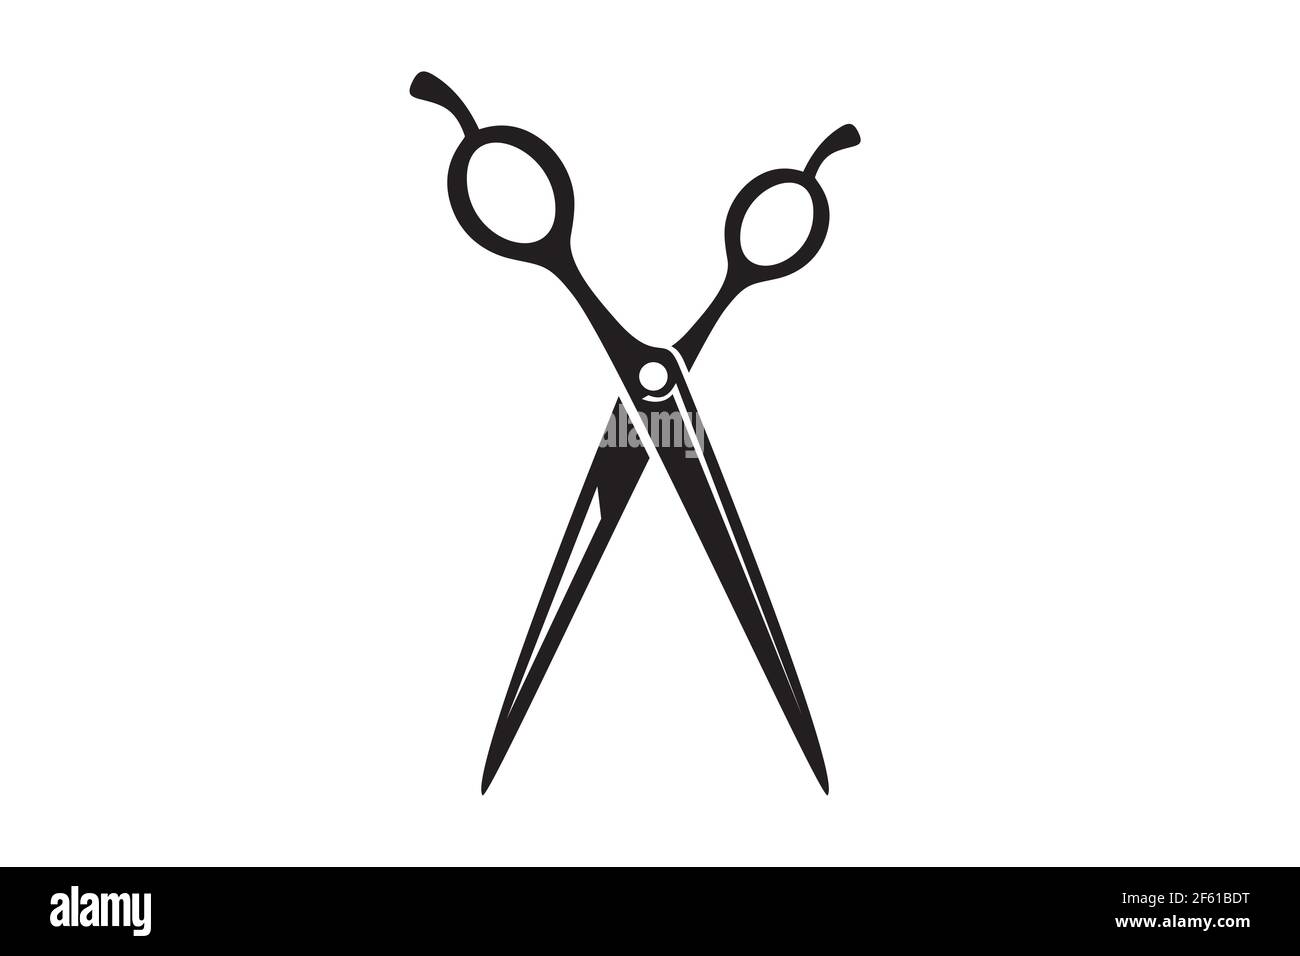 Scissors icon vector illustration. Utensil or hairdresser logo symbol Stock  Vector Image & Art - Alamy